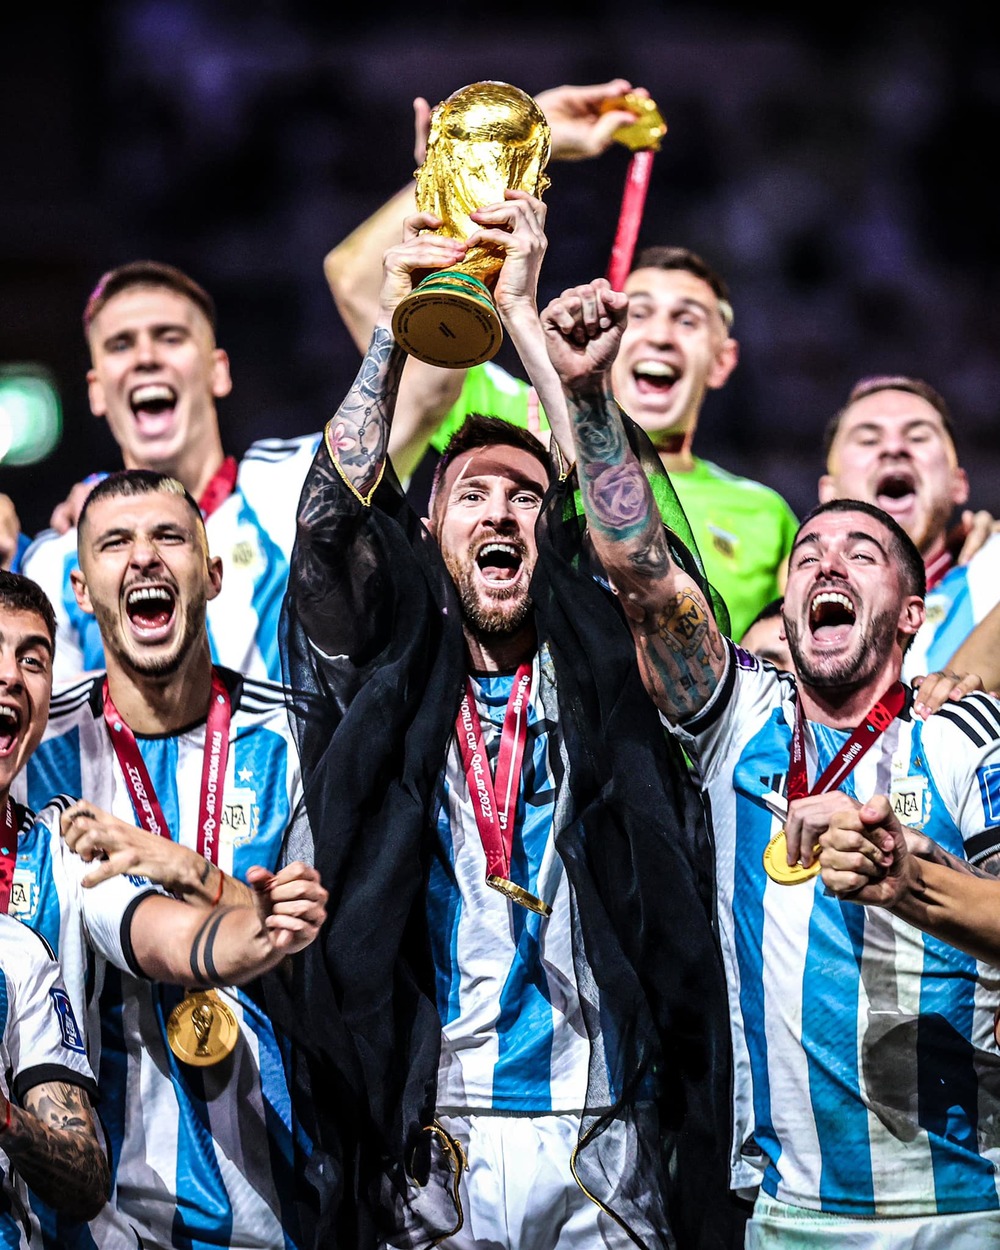 Dàn sao Việt sẽ chúc mừng Messi và tuyển Argentina khi vô địch World Cup. Đây là một sự kiện vô cùng đáng mừng và đáng để chúc mừng. Hãy truy cập hình ảnh để thấy rõ niềm vui của các sao Việt và cả Messi, khi giành được chức vô địch danh giá.